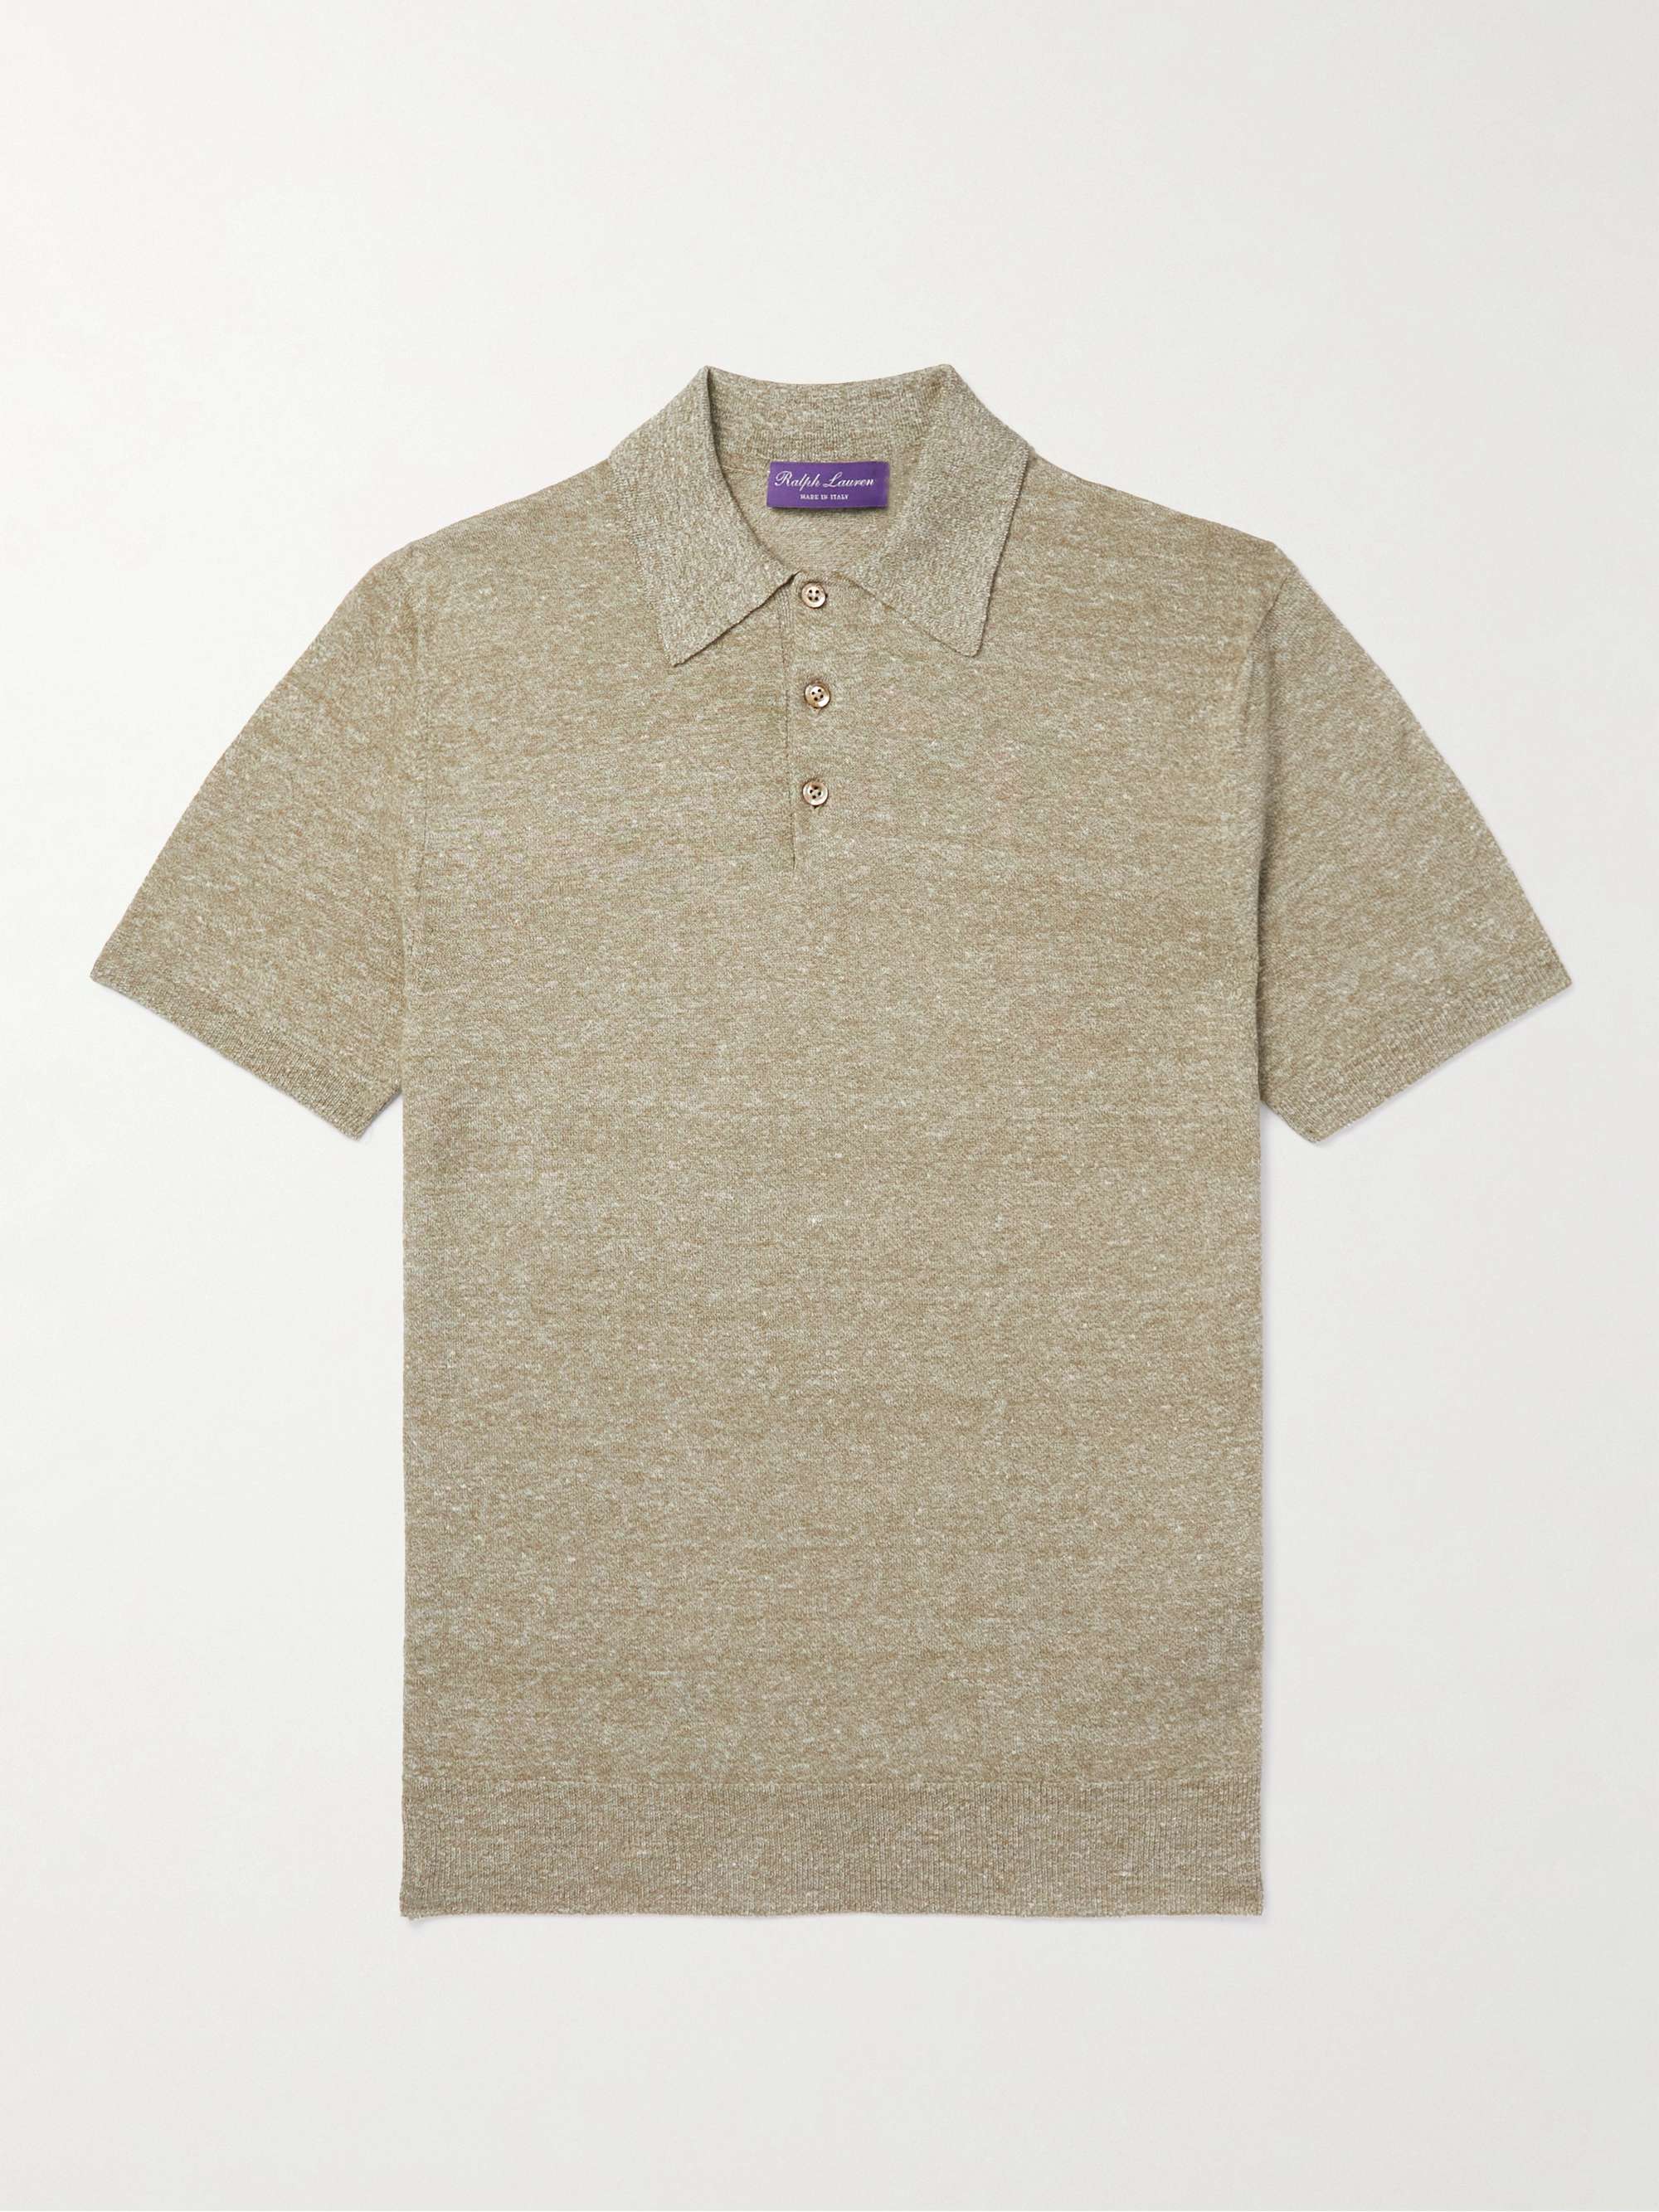 RALPH LAUREN PURPLE LABEL Linen and Cotton-Blend Polo Shirt | MR PORTER